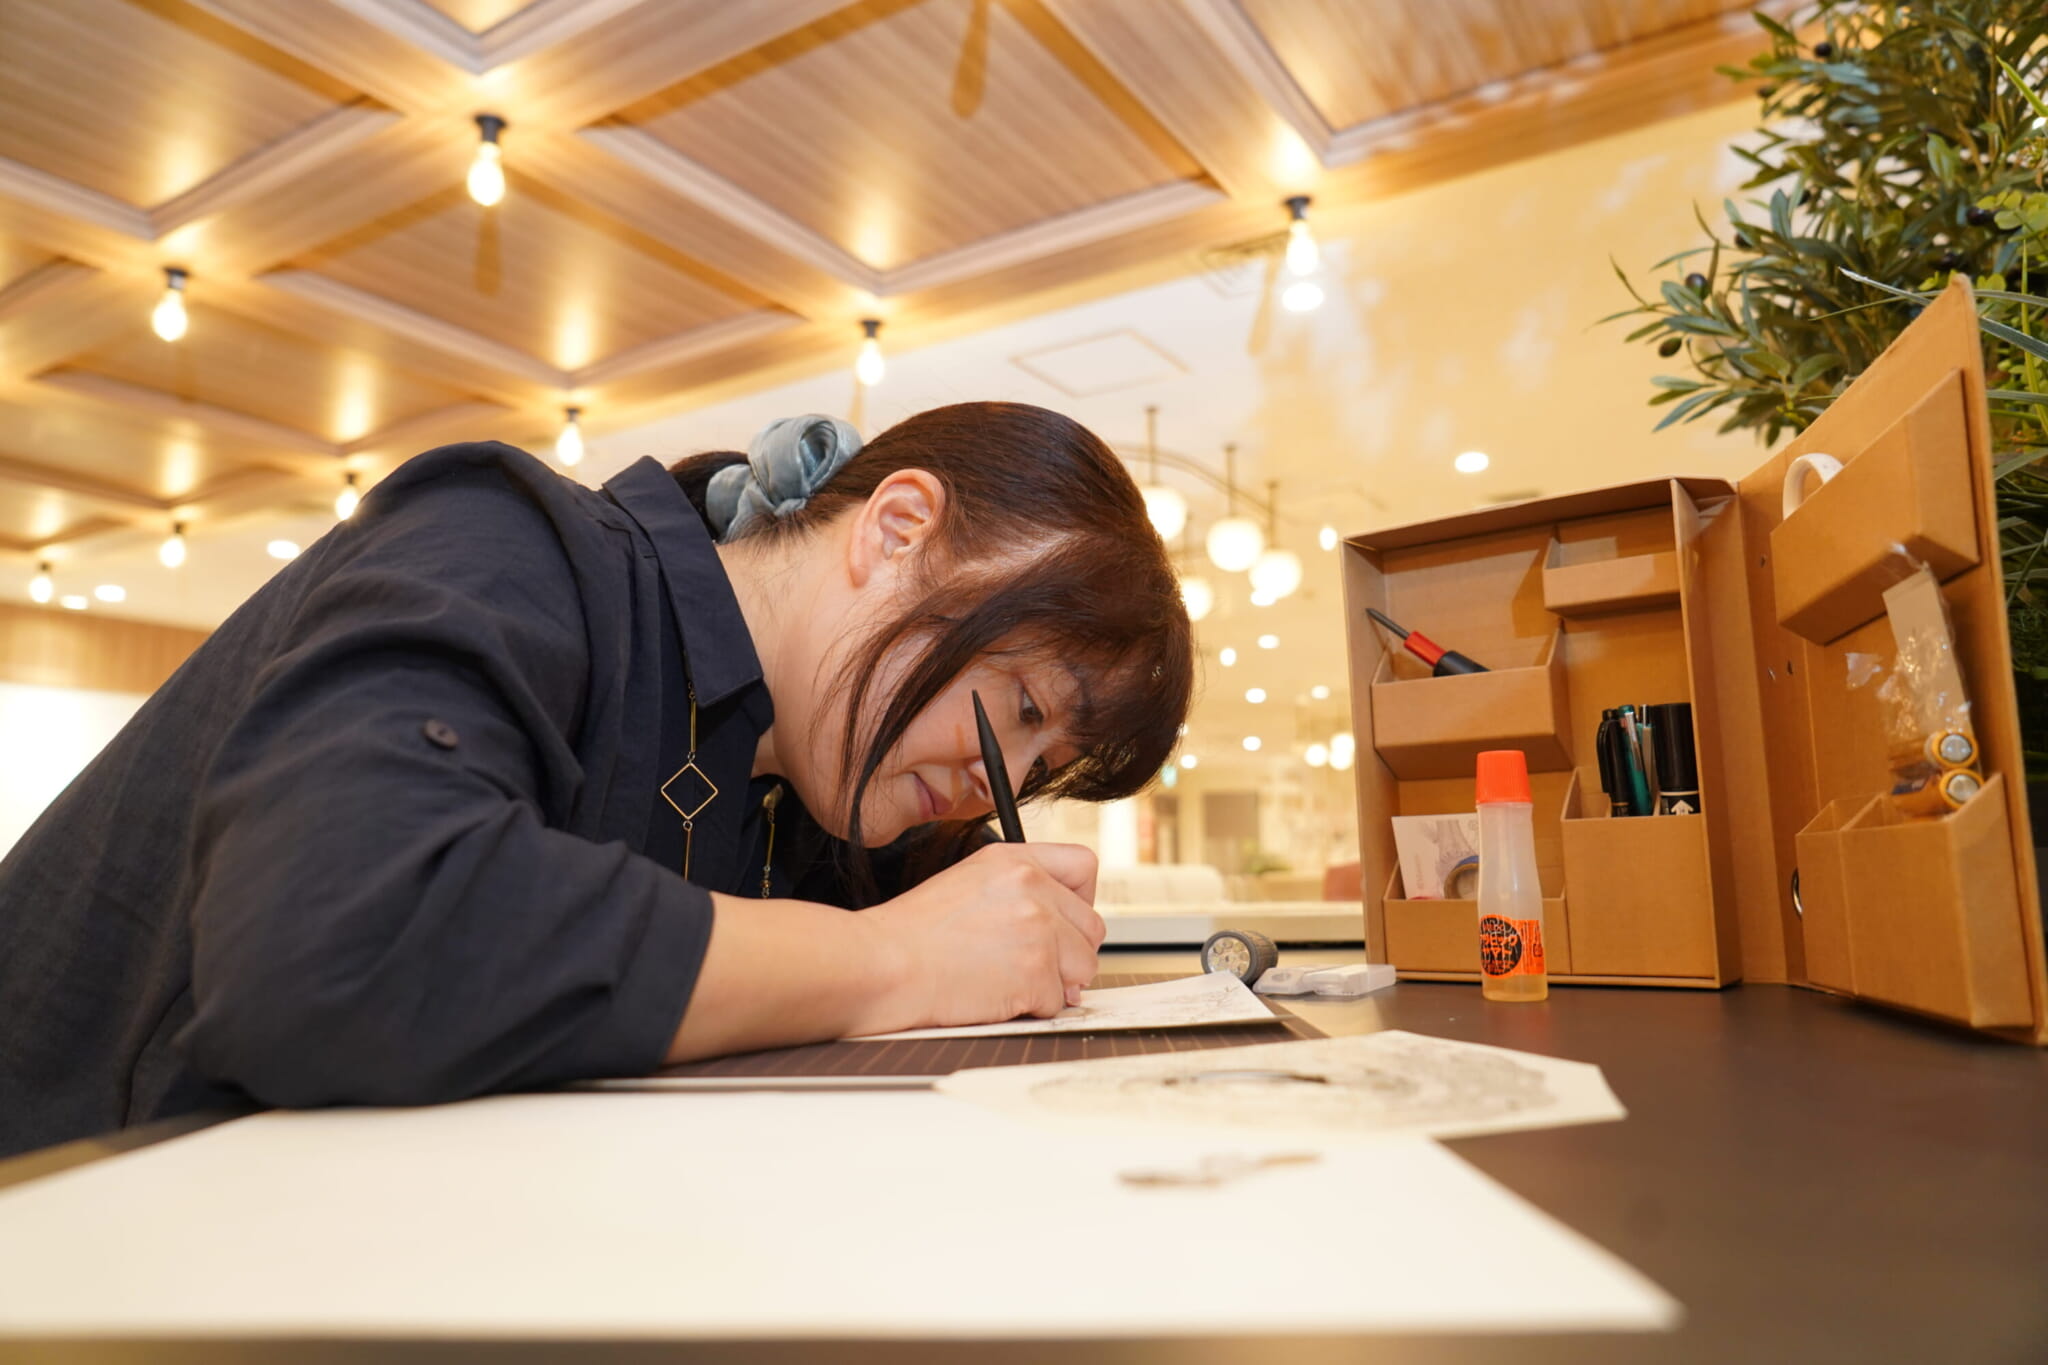 kiriken masayo japanese paper artist 